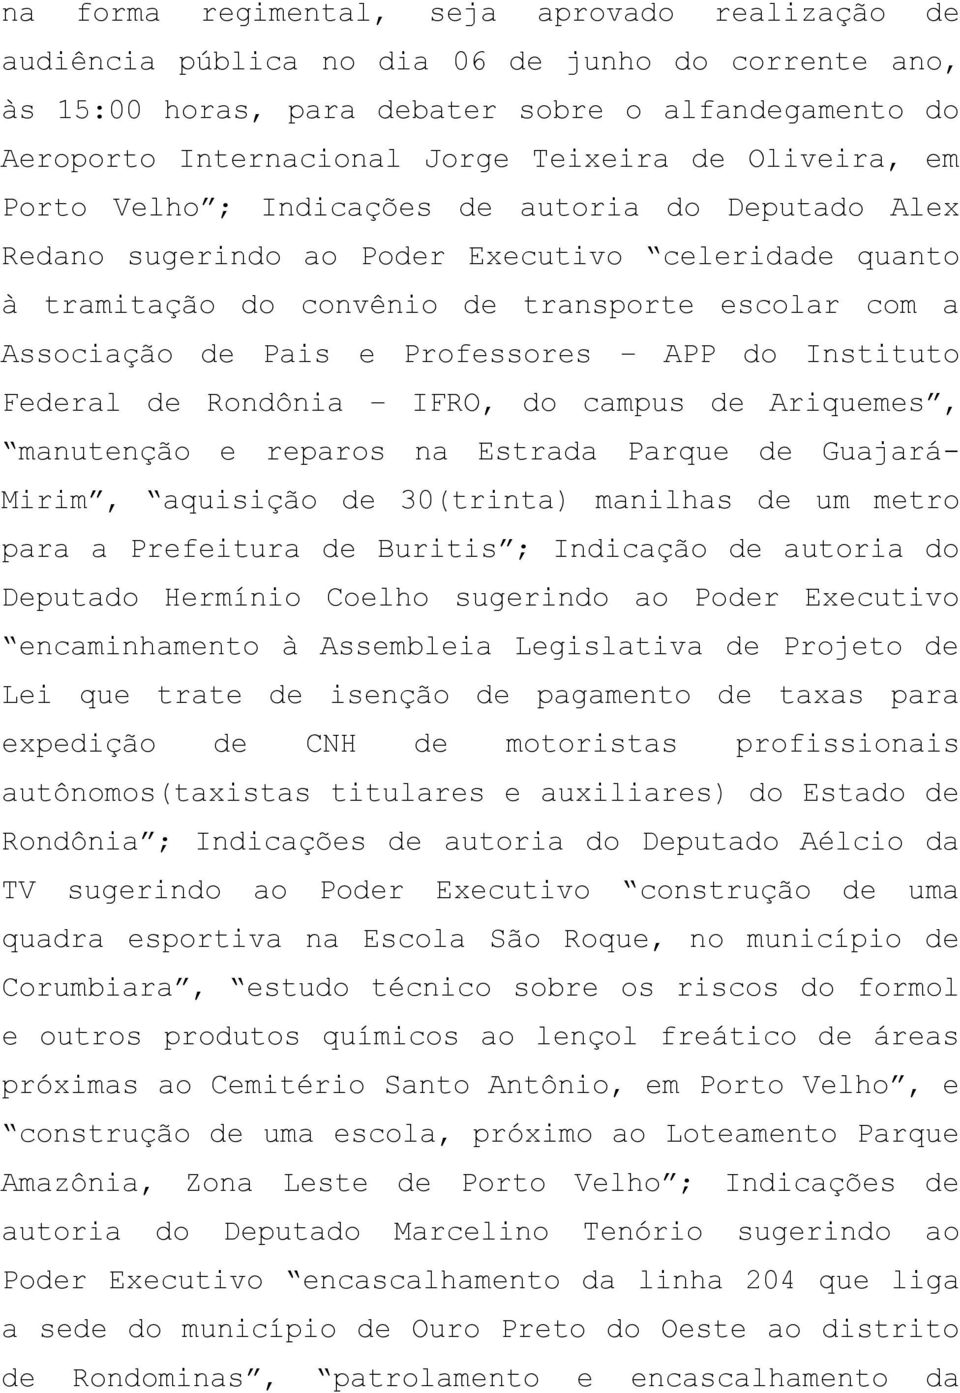 Professores APP do Instituto Federal de Rondônia IFRO, do campus de Ariquemes, manutenção e reparos na Estrada Parque de Guajará- Mirim, aquisição de 30(trinta) manilhas de um metro para a Prefeitura